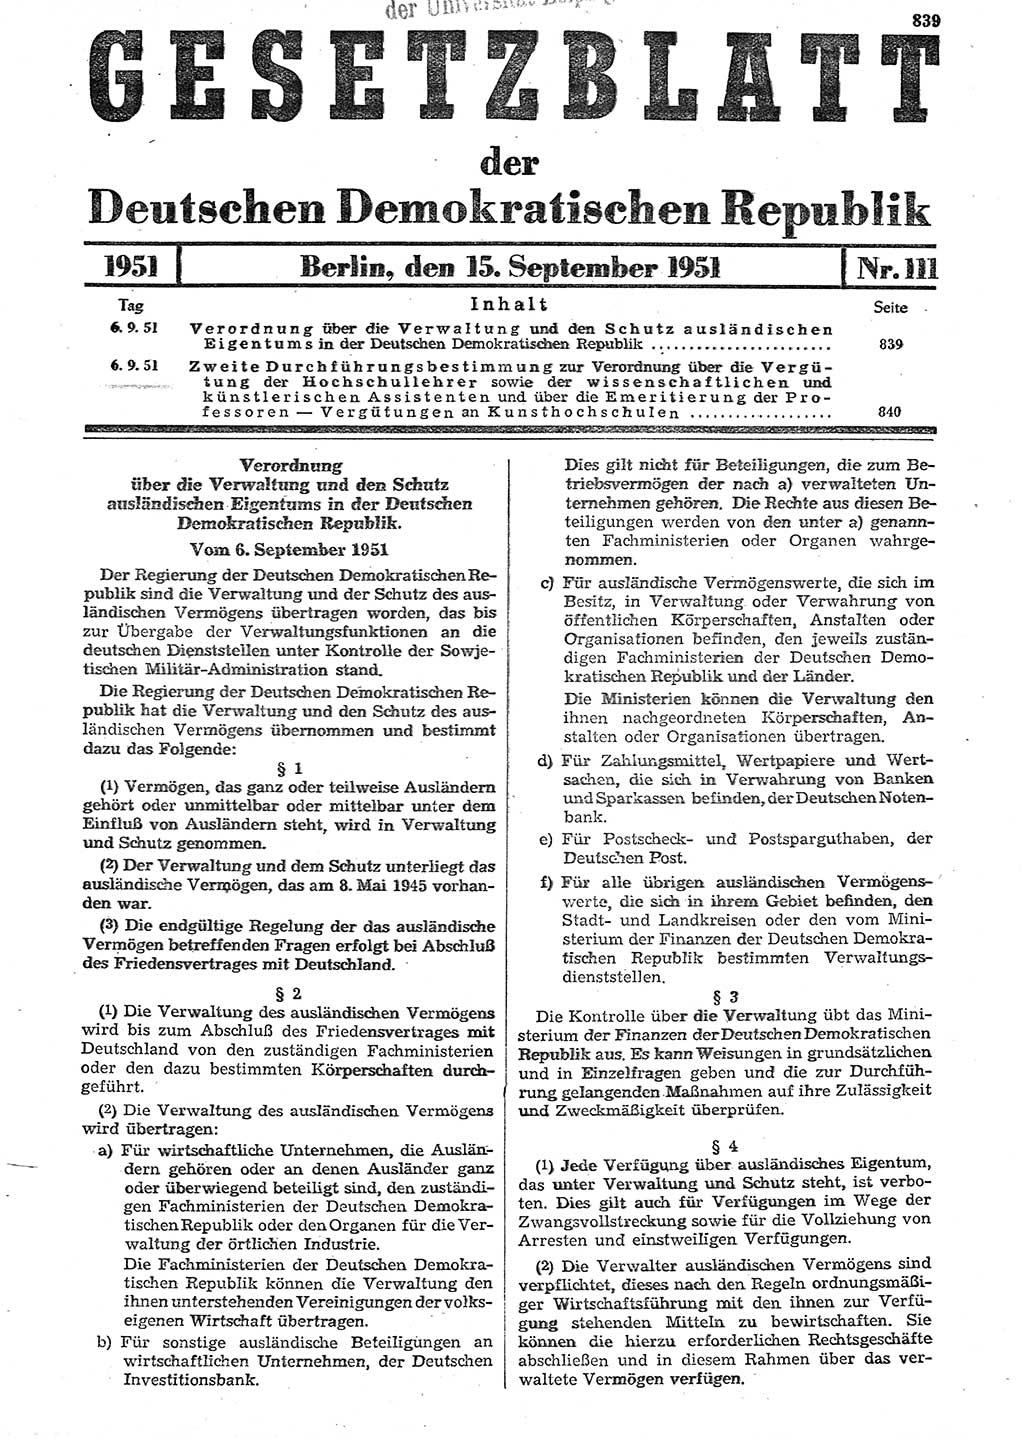 Gesetzblatt (GBl.) der Deutschen Demokratischen Republik (DDR) 1951, Seite 839 (GBl. DDR 1951, S. 839)